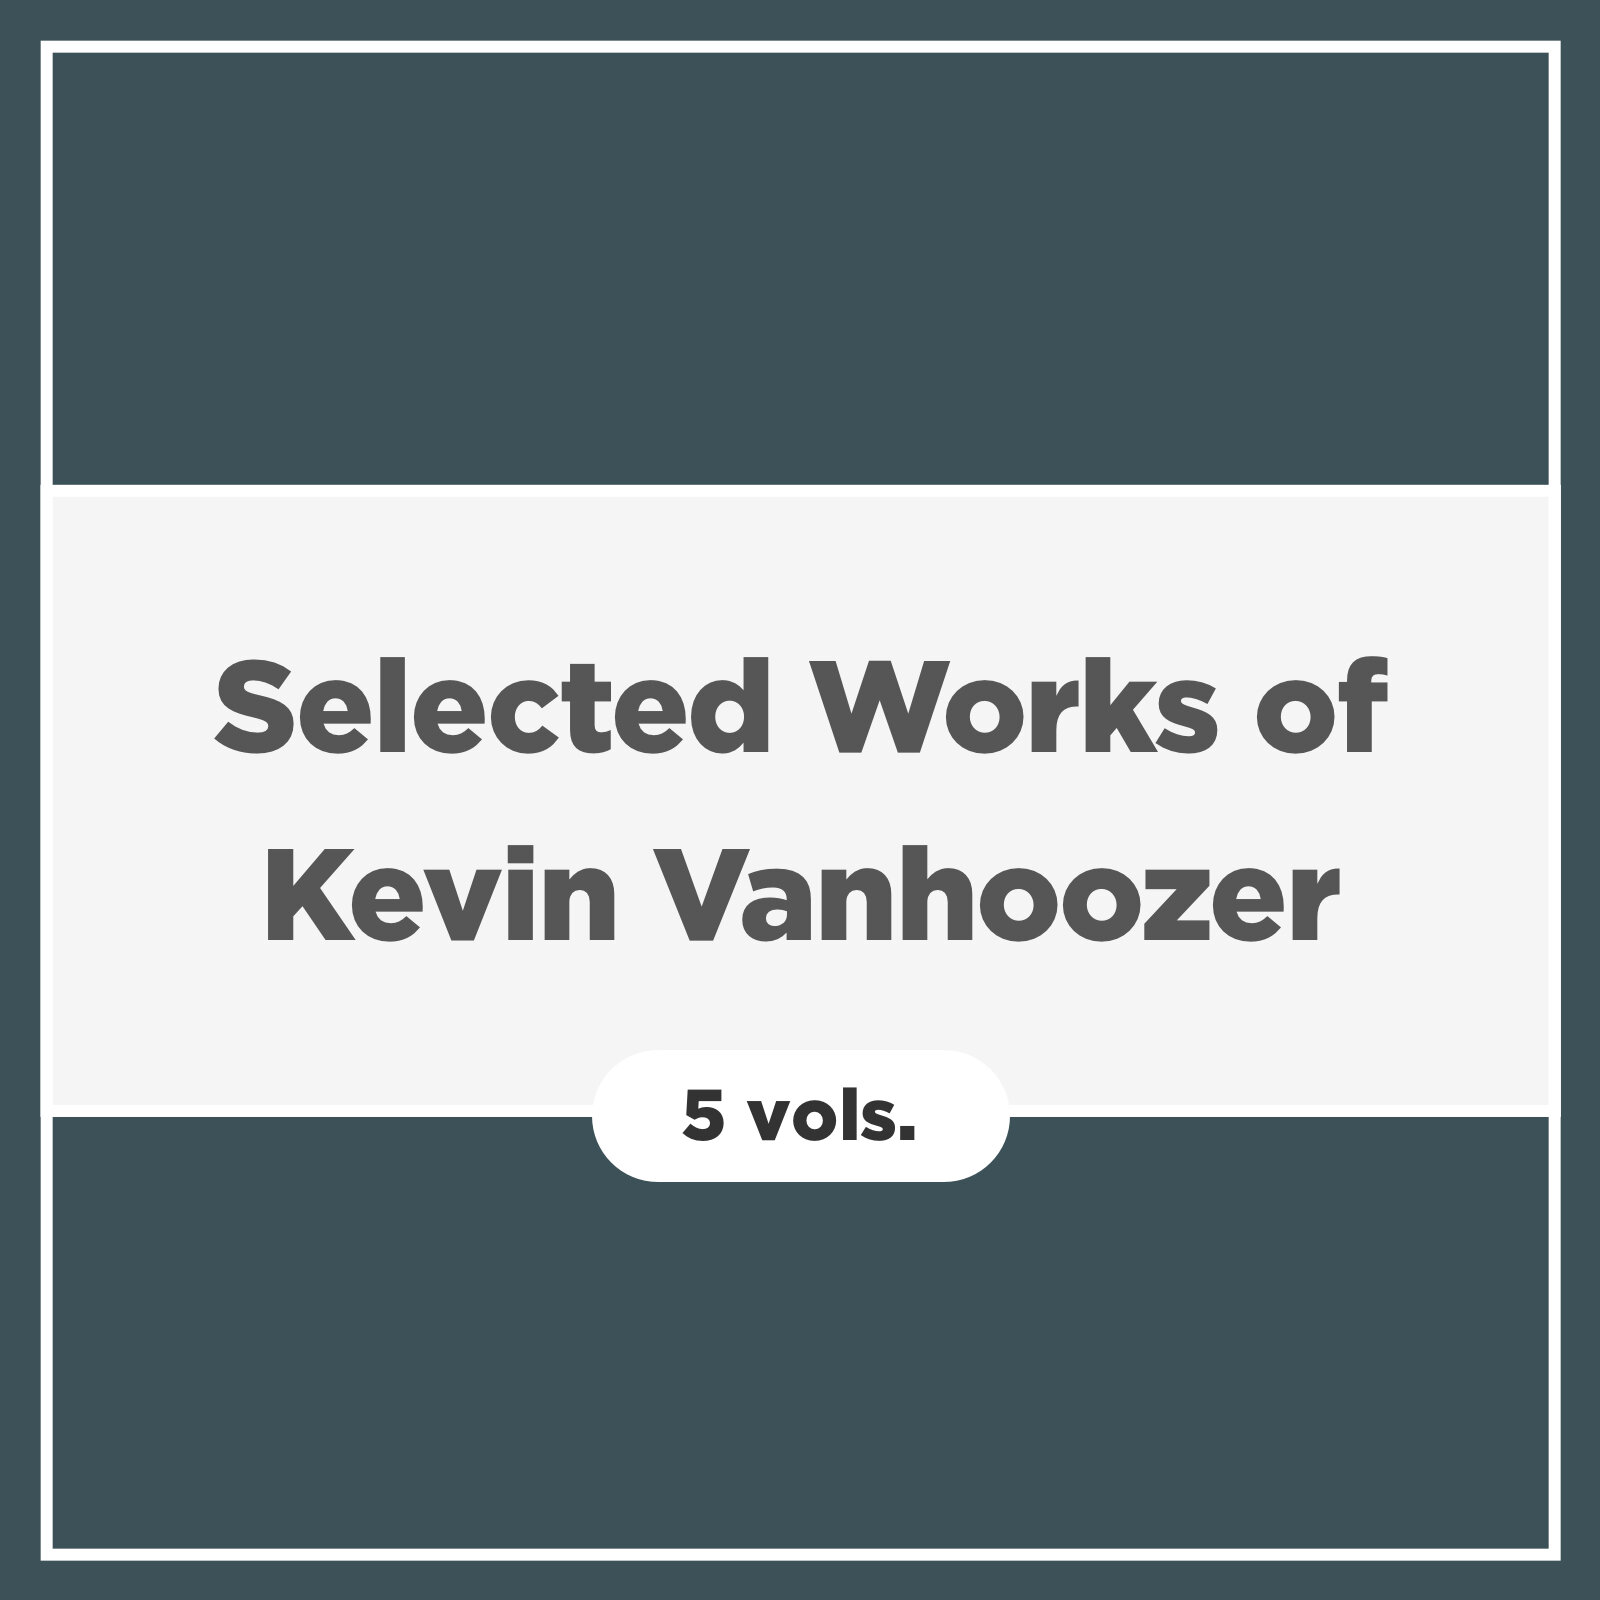 Selected Works of Kevin Vanhoozer (5 vols.)